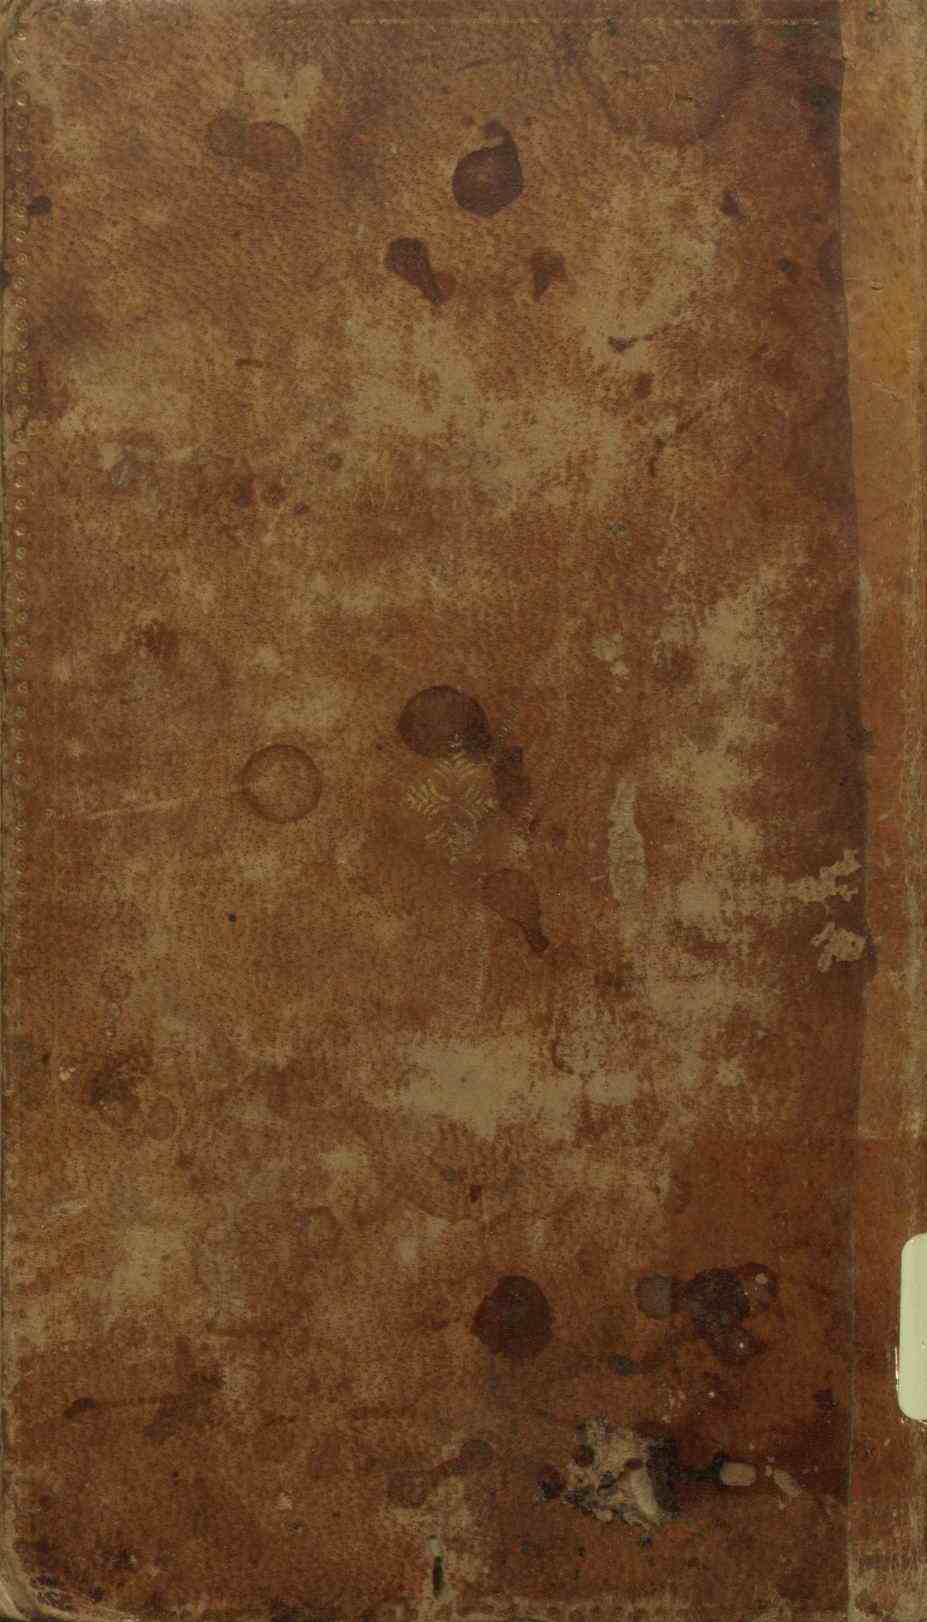 کتابچه قبر پیر غار معروف بسپهسالار از قراء دماوند؛افضل‌الملک و عارف خان افندی (قرن13 -14)